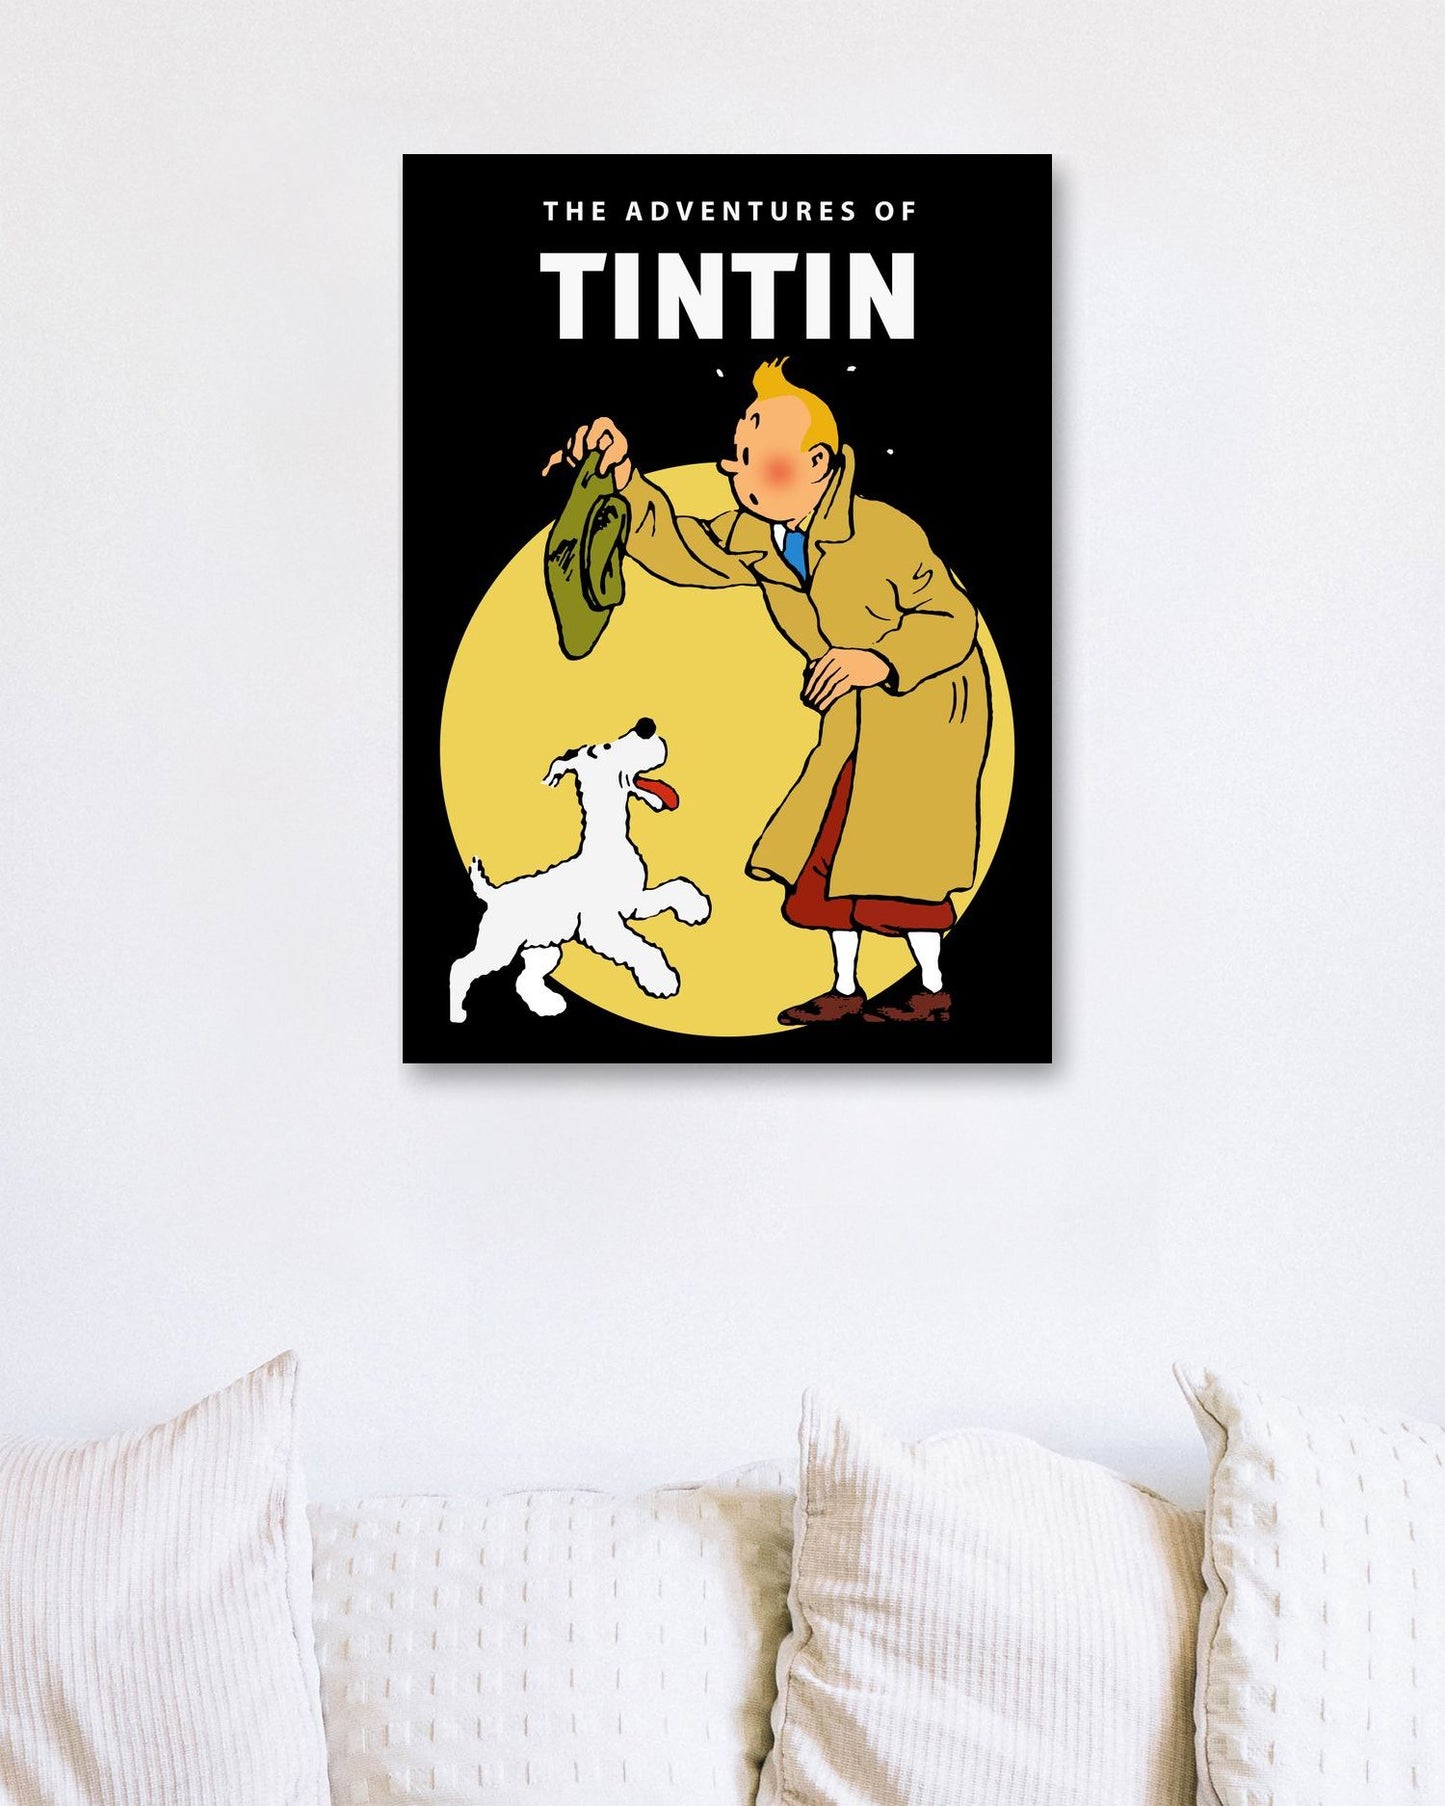 Tintin anime cartoon comic movies retro - @pansodda